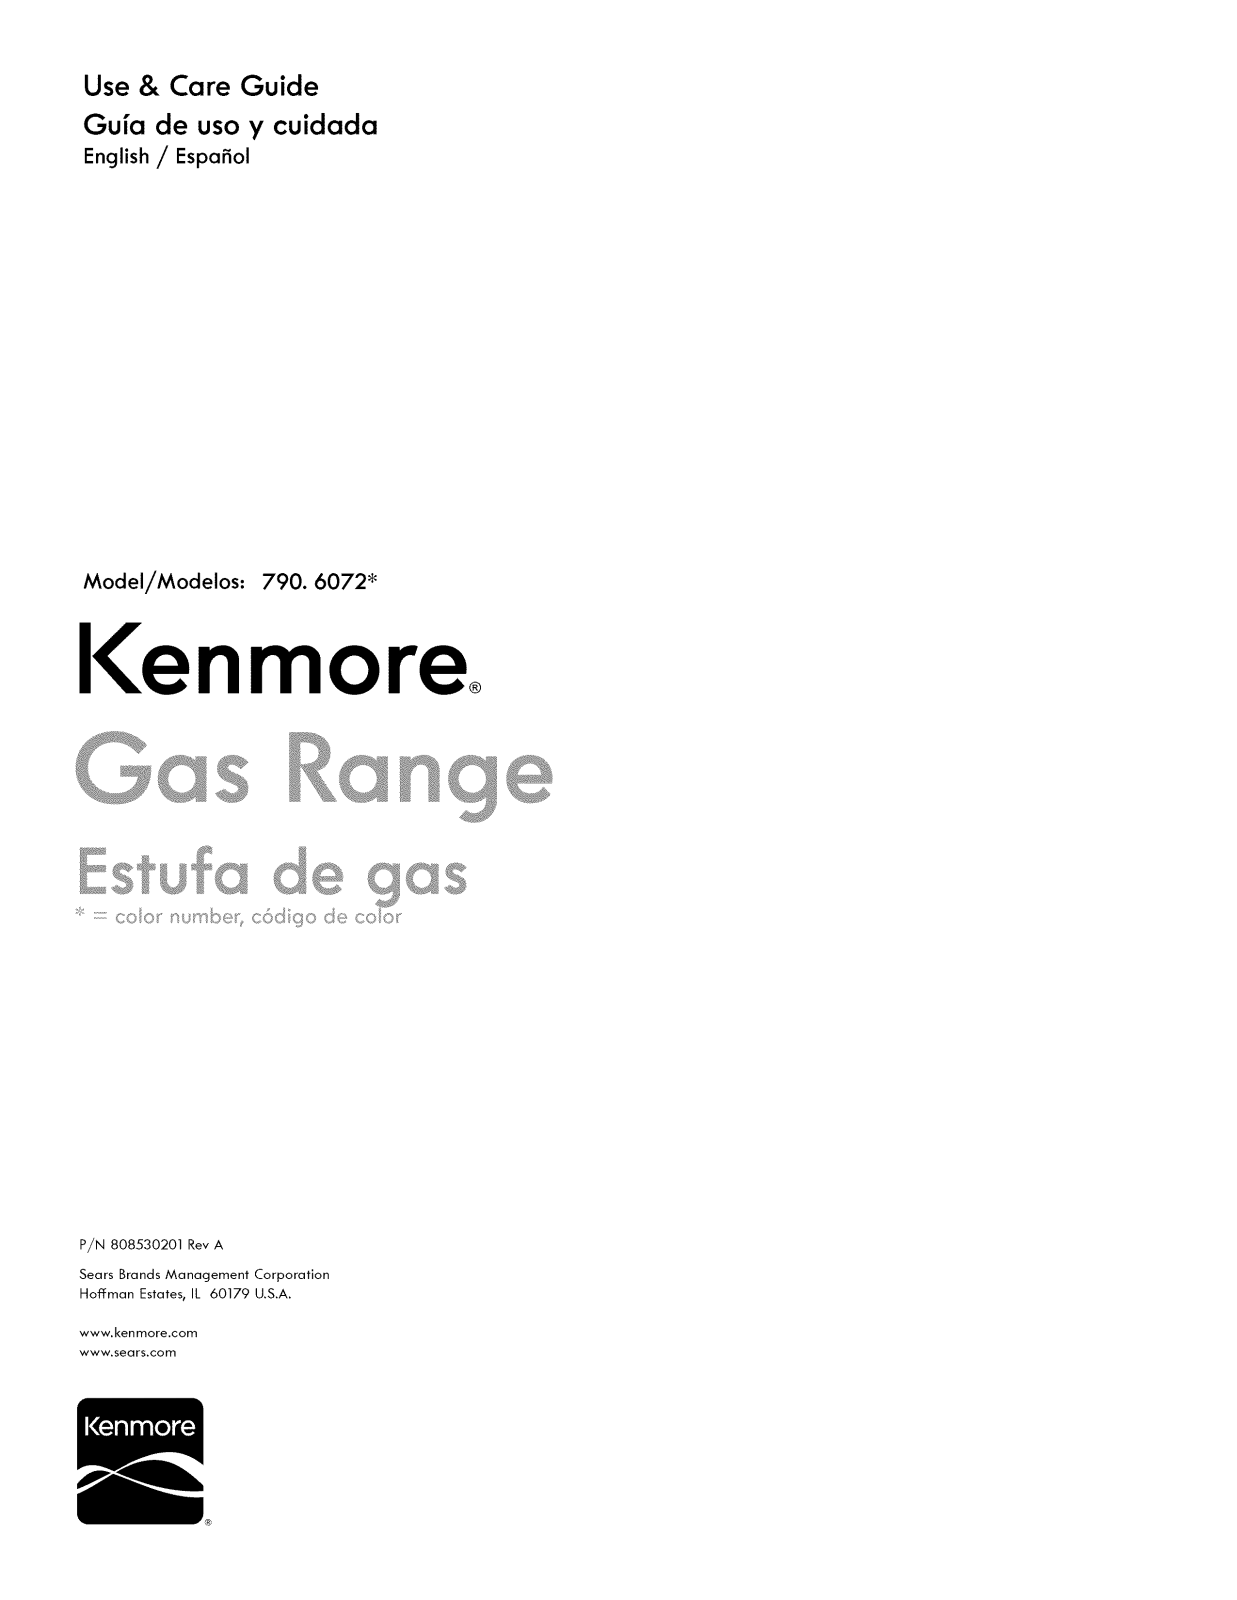 Kenmore 79060721906, 79060721905, 79060721904, 79060721903 Owner’s Manual